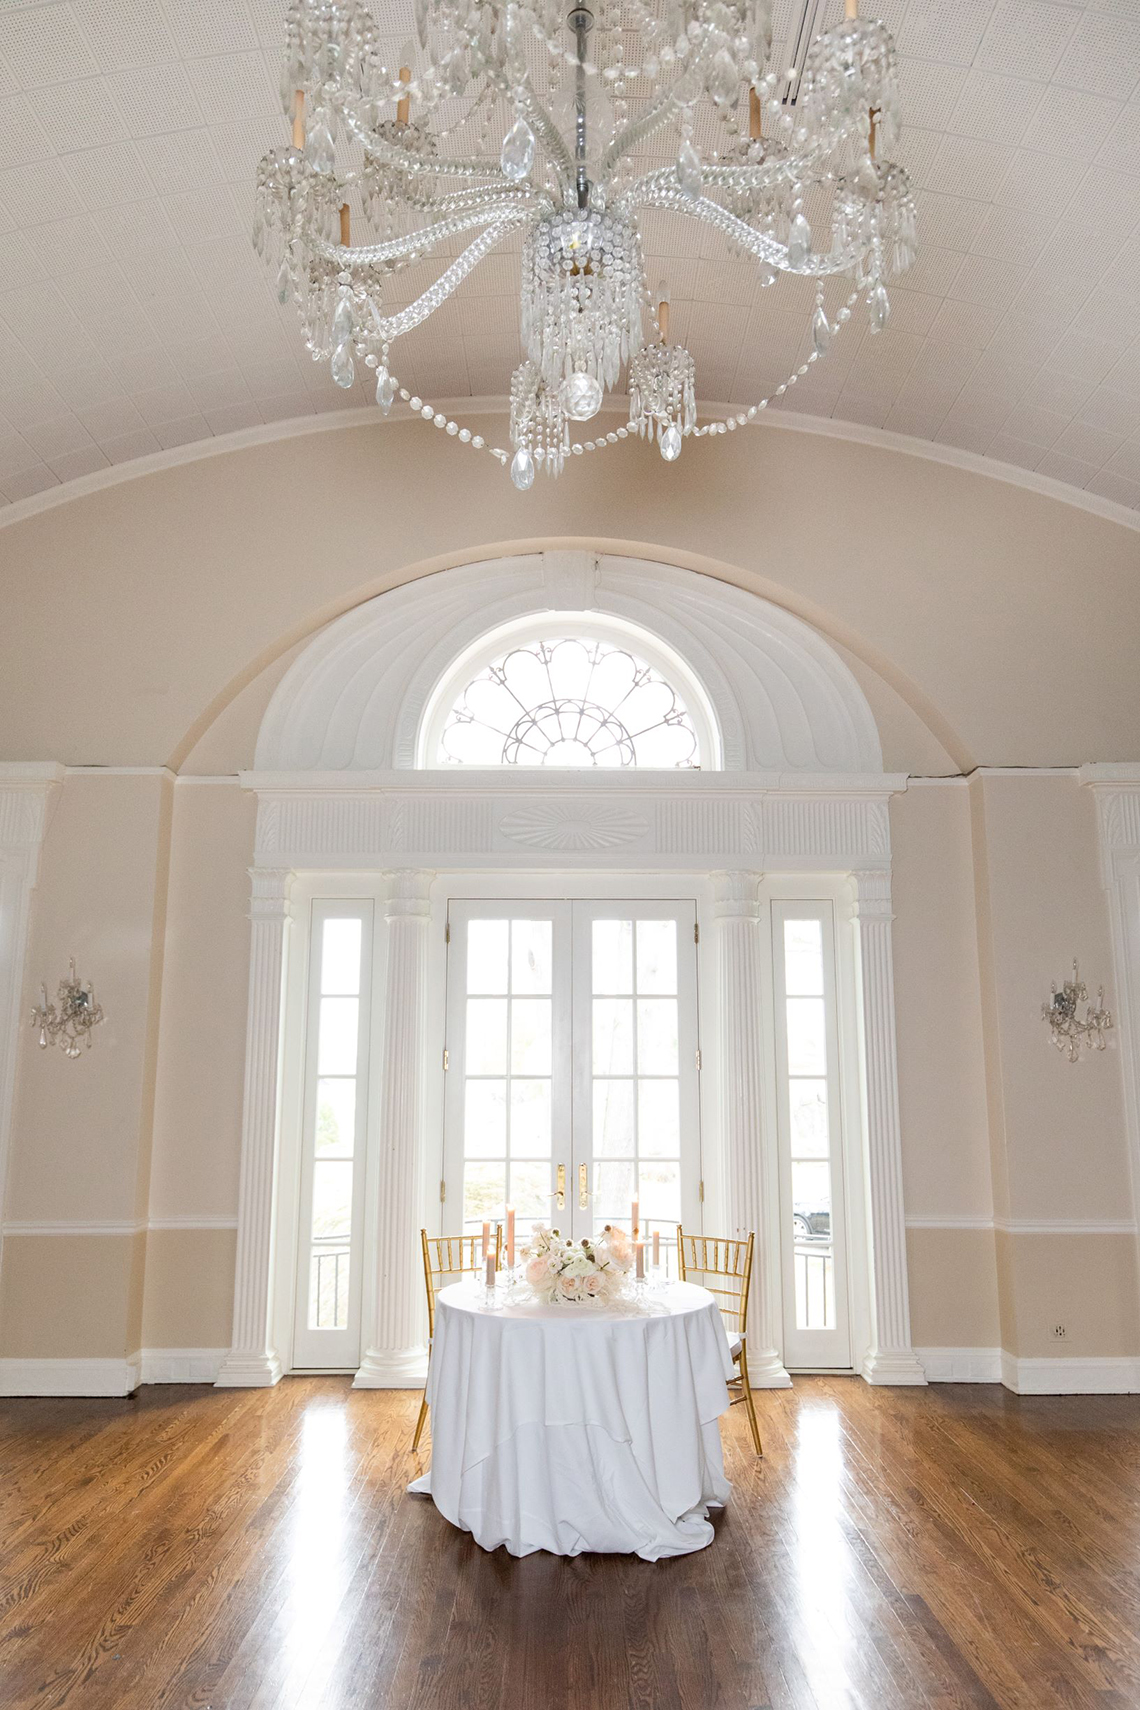 Inspiración para una boda blanca moderna - Mandy Forlenza Sticos - Fotografía de Siobhan Stanton - Amsale 29